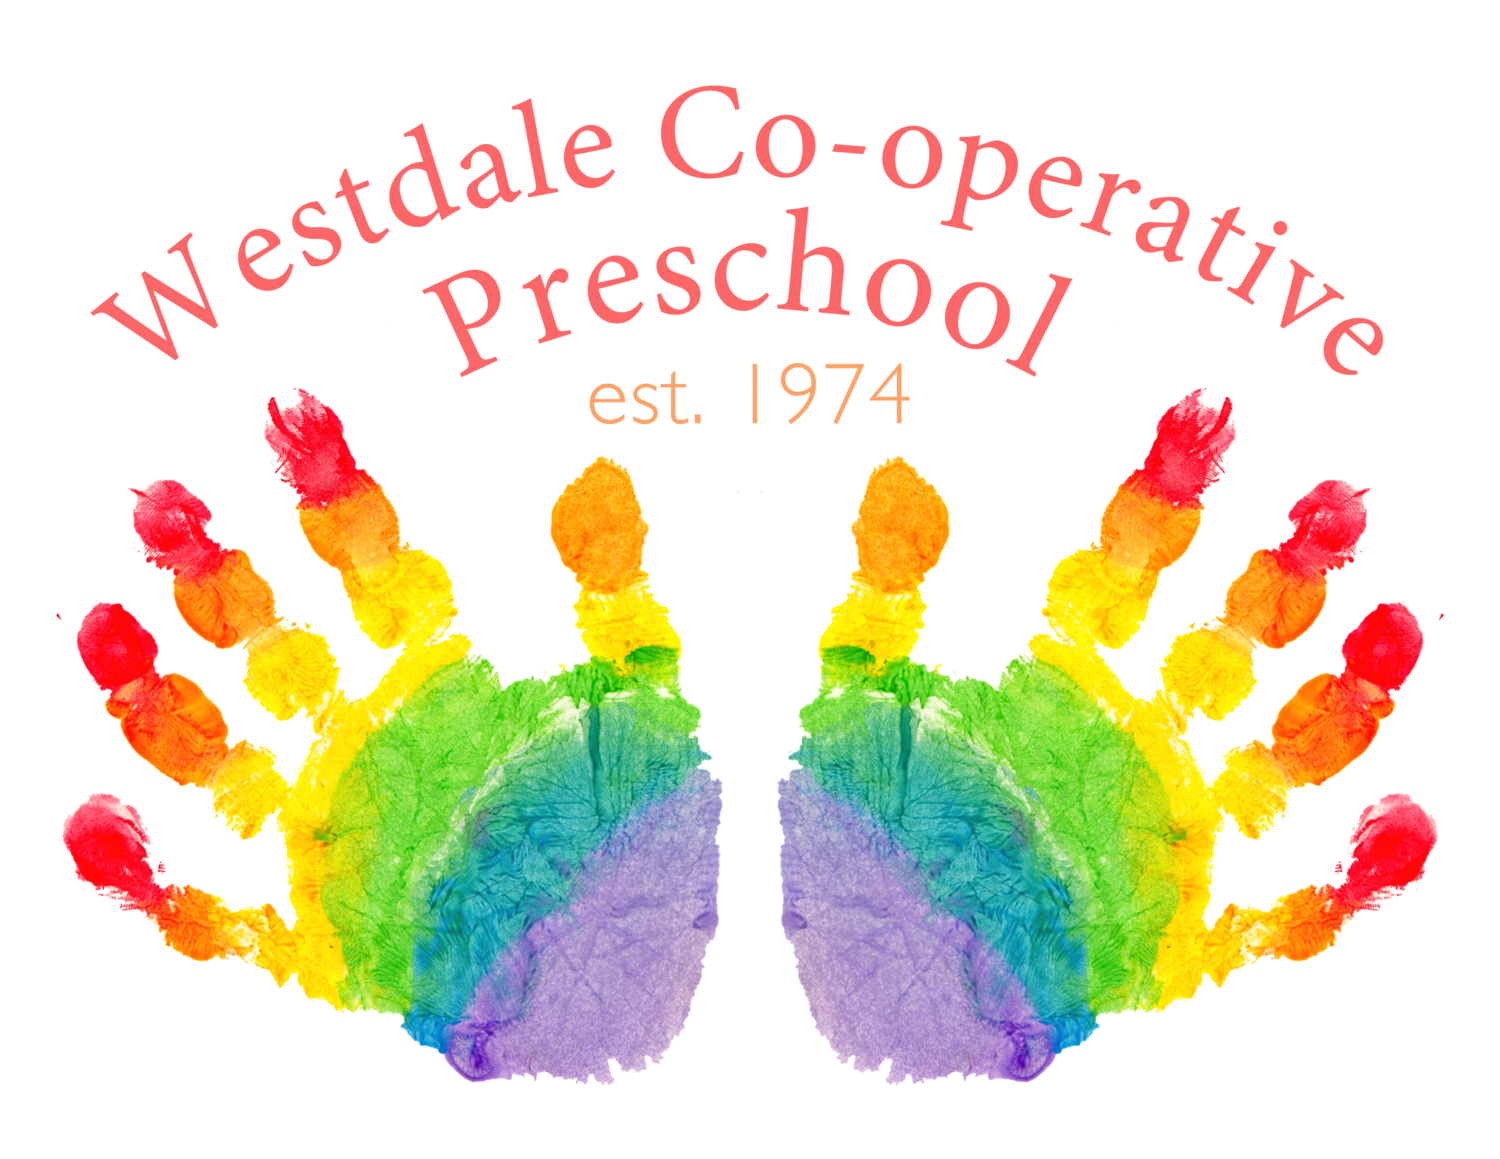 Westdale Co-operative Preschool